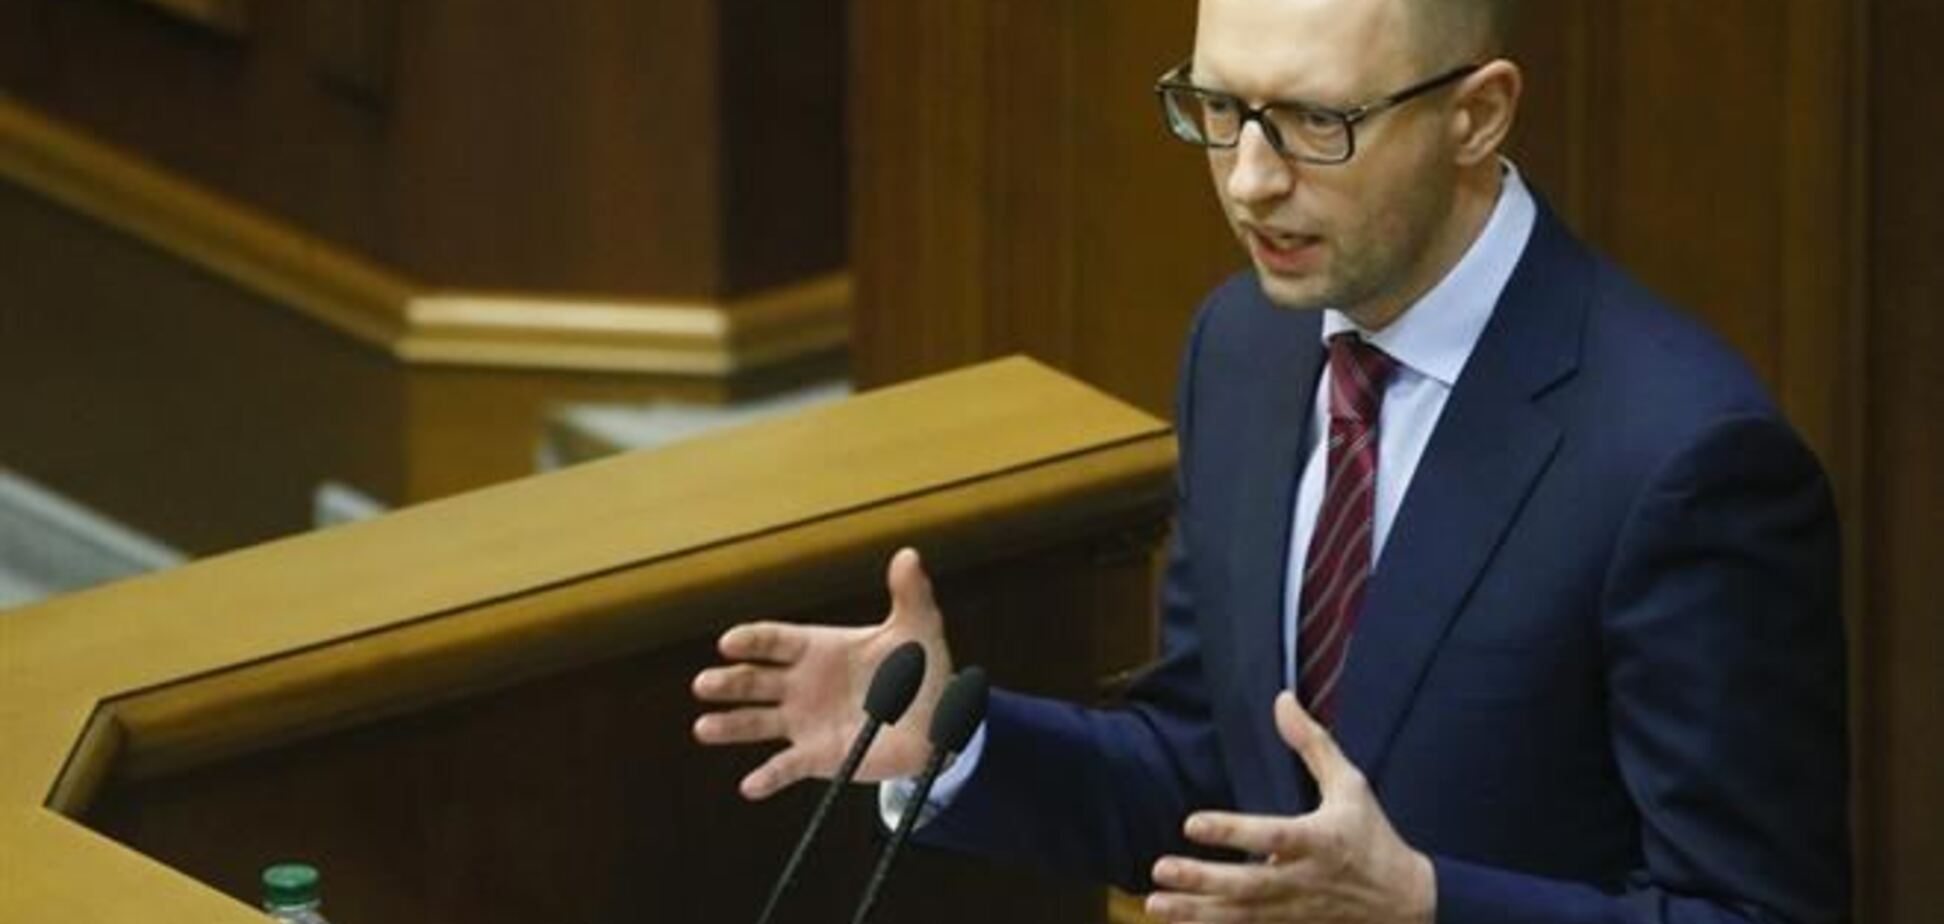 Нова влада України будуть виконувати Свої зобов'язання, запевнив Яценюк